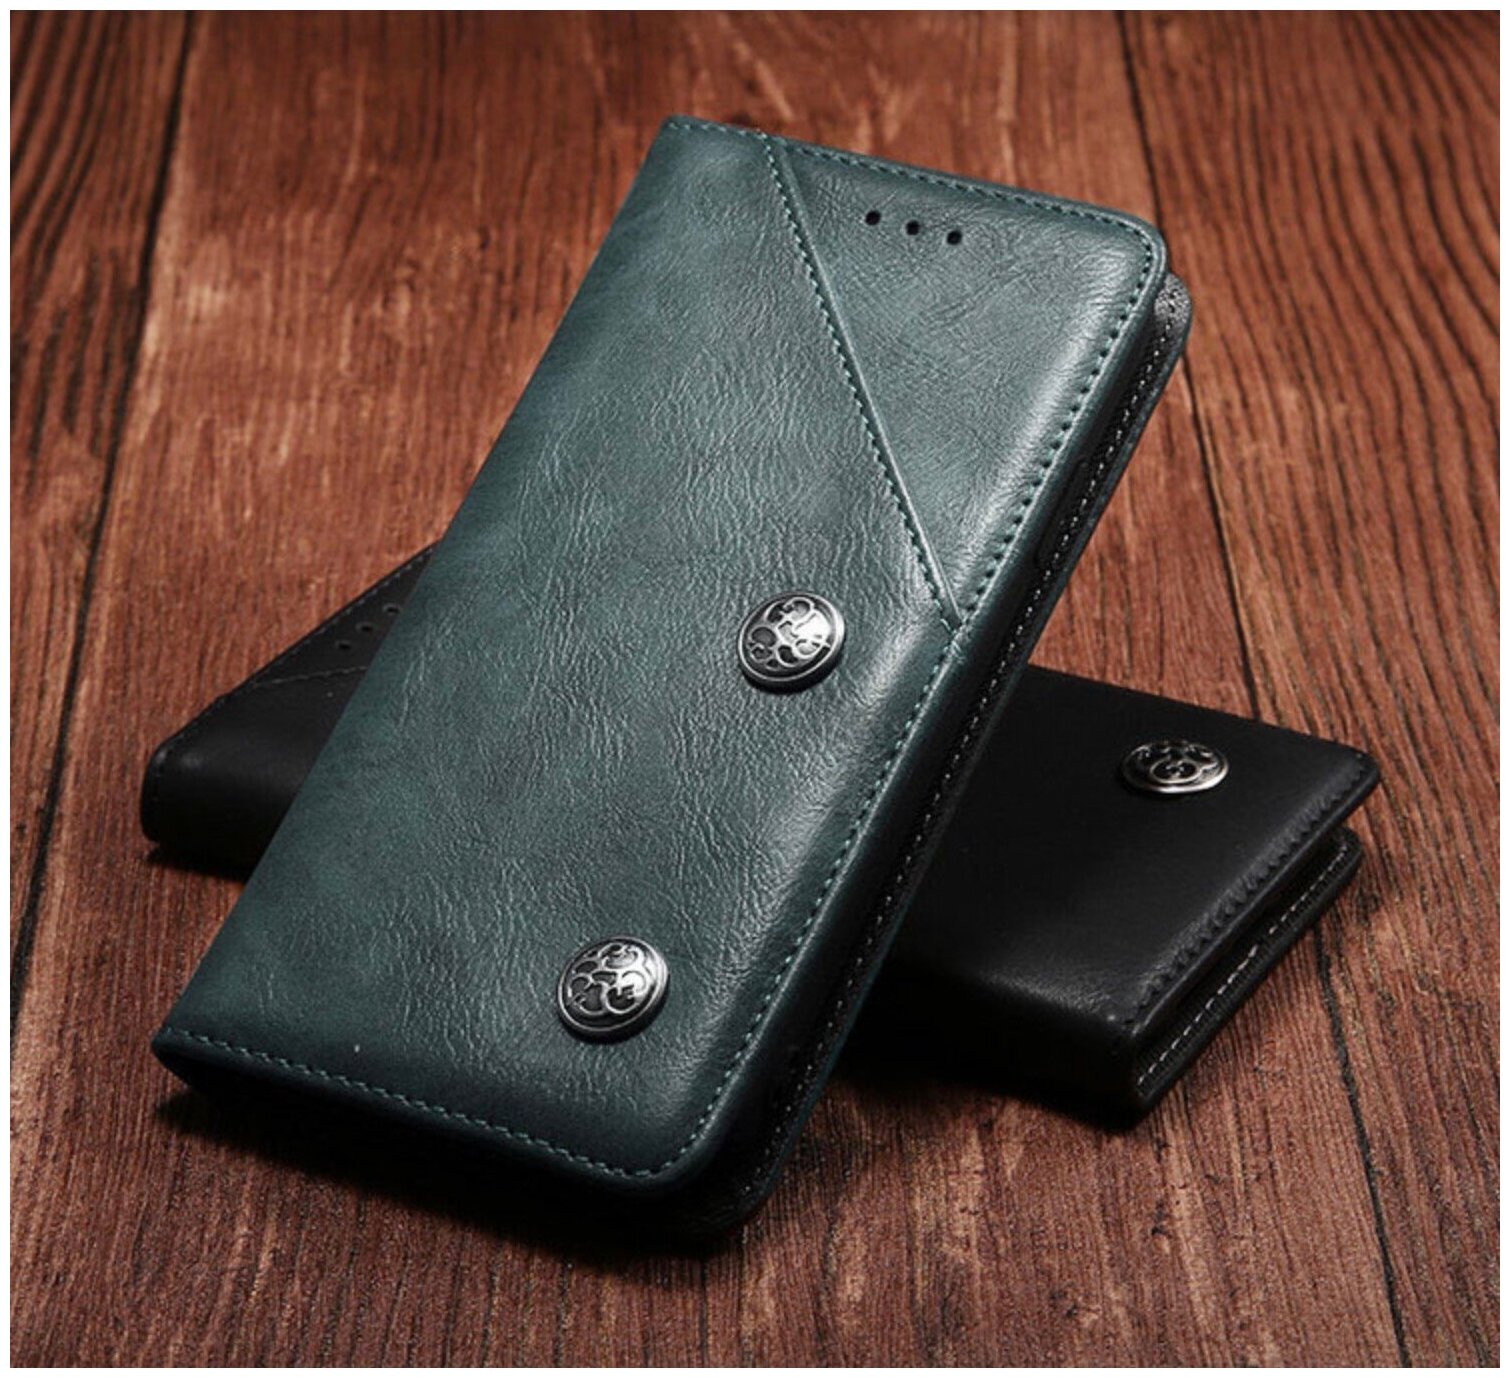 Чехол-книжка MyPads Cassa Della Borsa для Samsung Galaxy A8+ plus (2018) SM-A730F/DS из эко-кожи с отделением для банковских карт и визиток серо-си